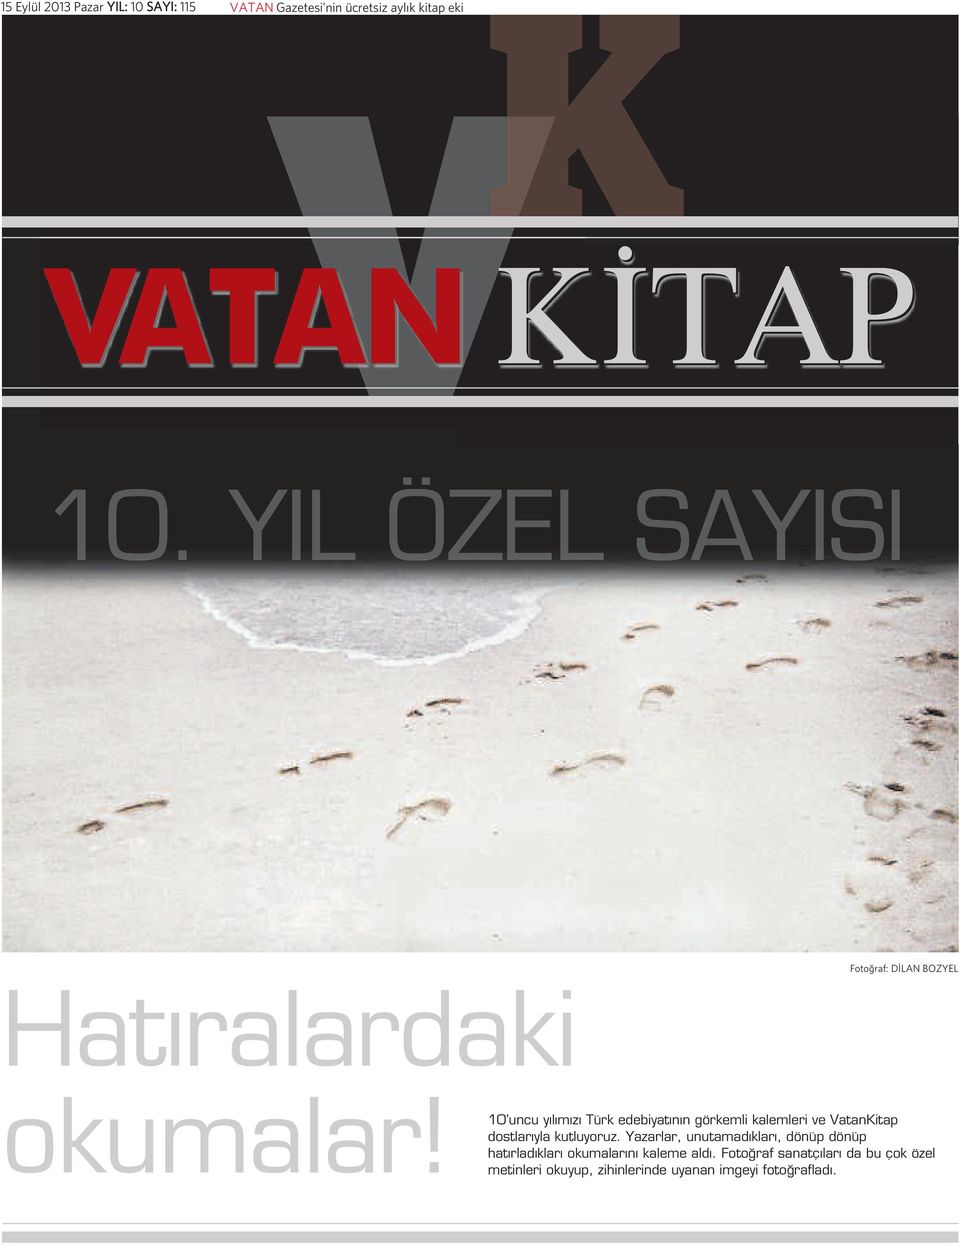 10 uncu yılımızı Türk edebiyatının görkemli kalemleri ve VatanKitap dostlarıyla kutluyoruz.